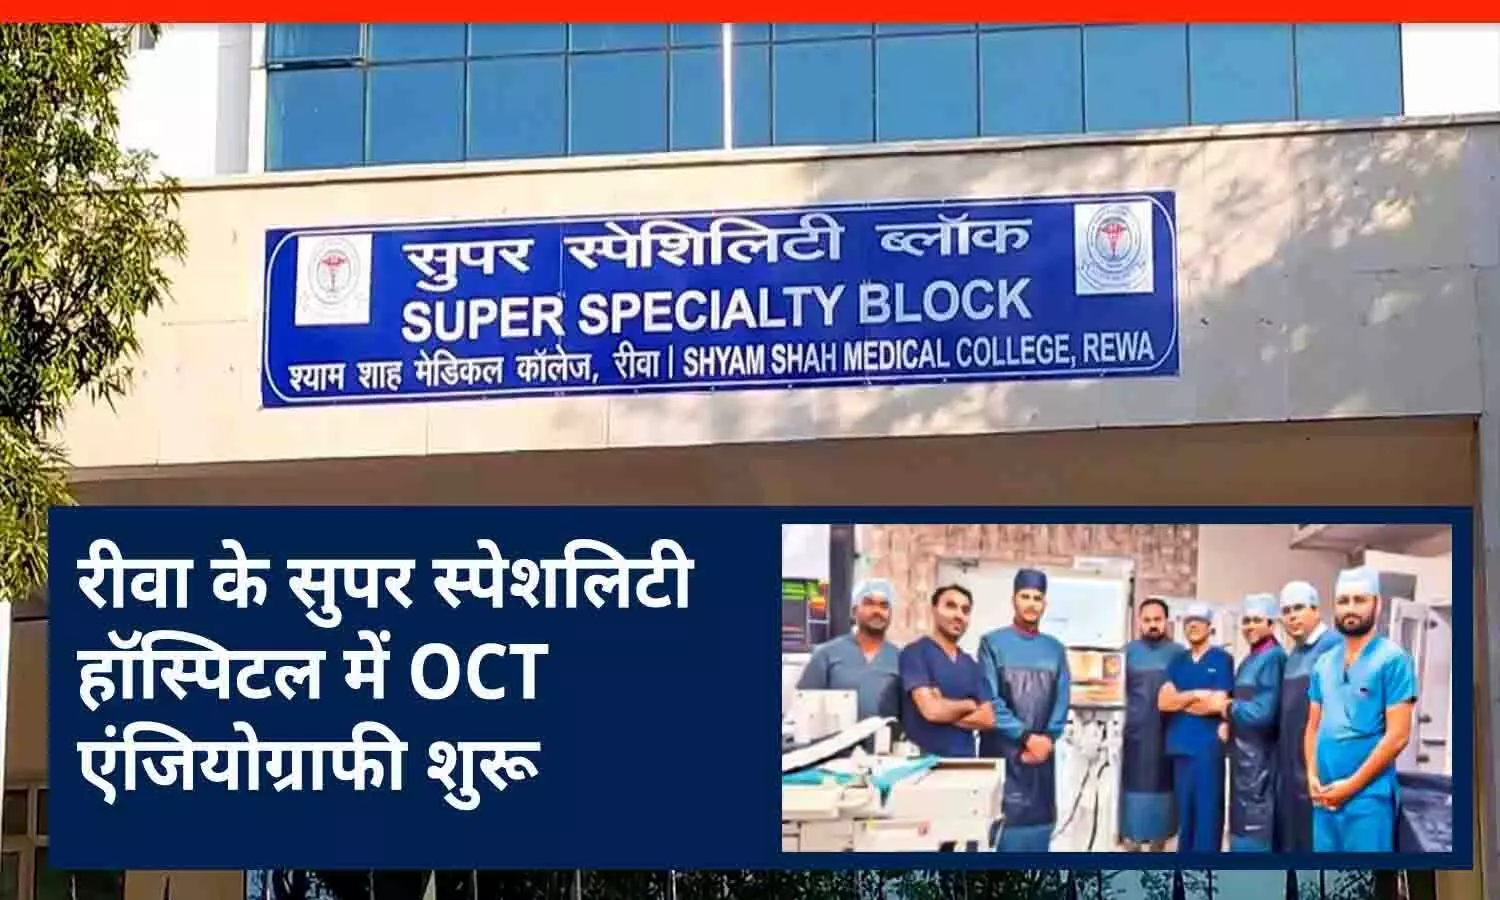 रीवा के सुपर स्पेशलिटी हॉस्पिटल में OCT एंजियोग्राफी शुरू, मरीजों के हार्ट की सूक्ष्म नसों में एंजियोग्राफी कर बचाई जा सकेगी जान